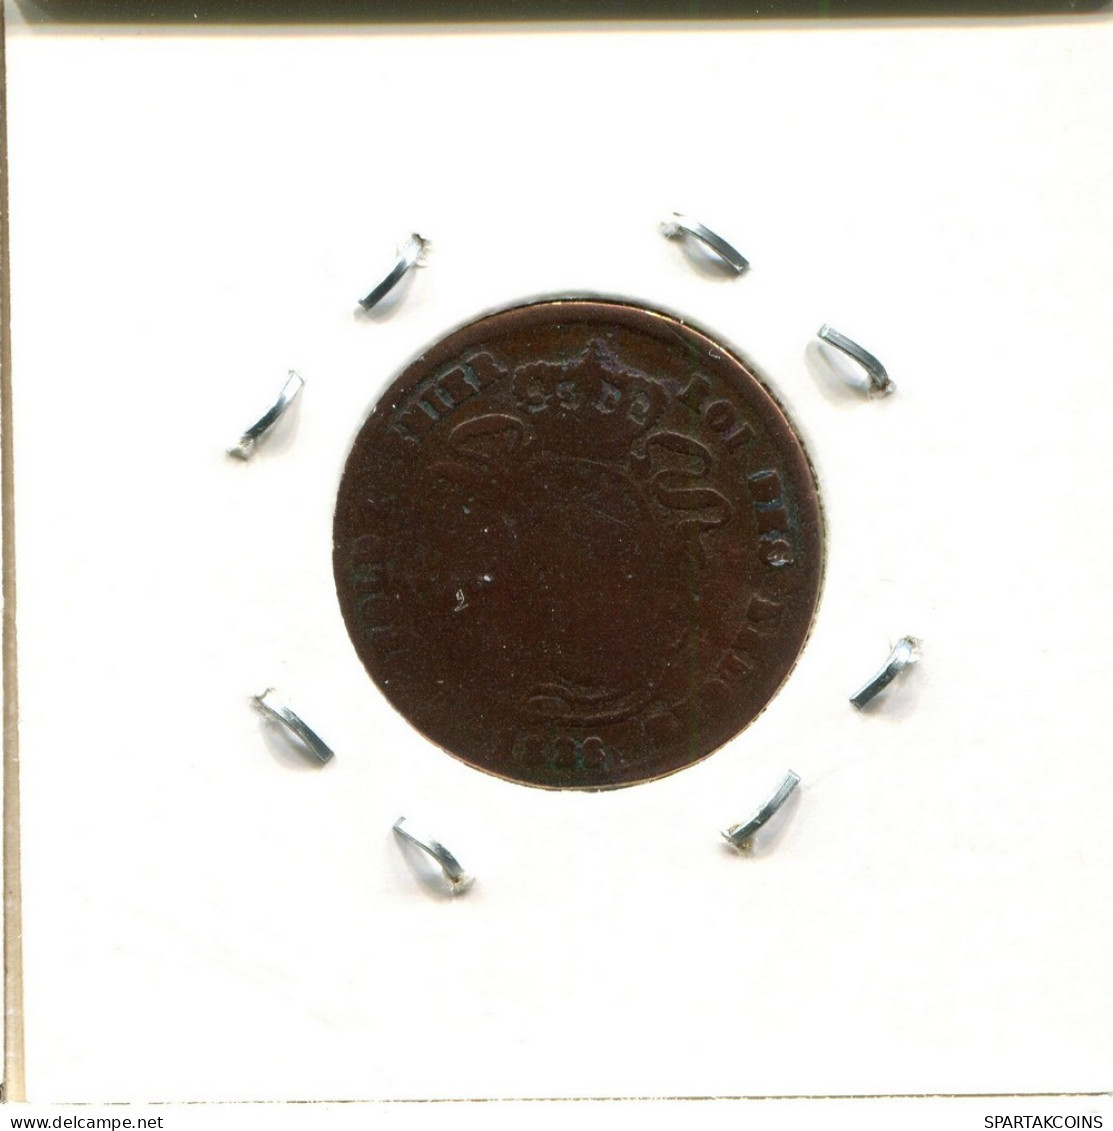 2 CENTIMES 1886 BELGIEN BELGIUM Münze #BA229.D.A - 2 Cents